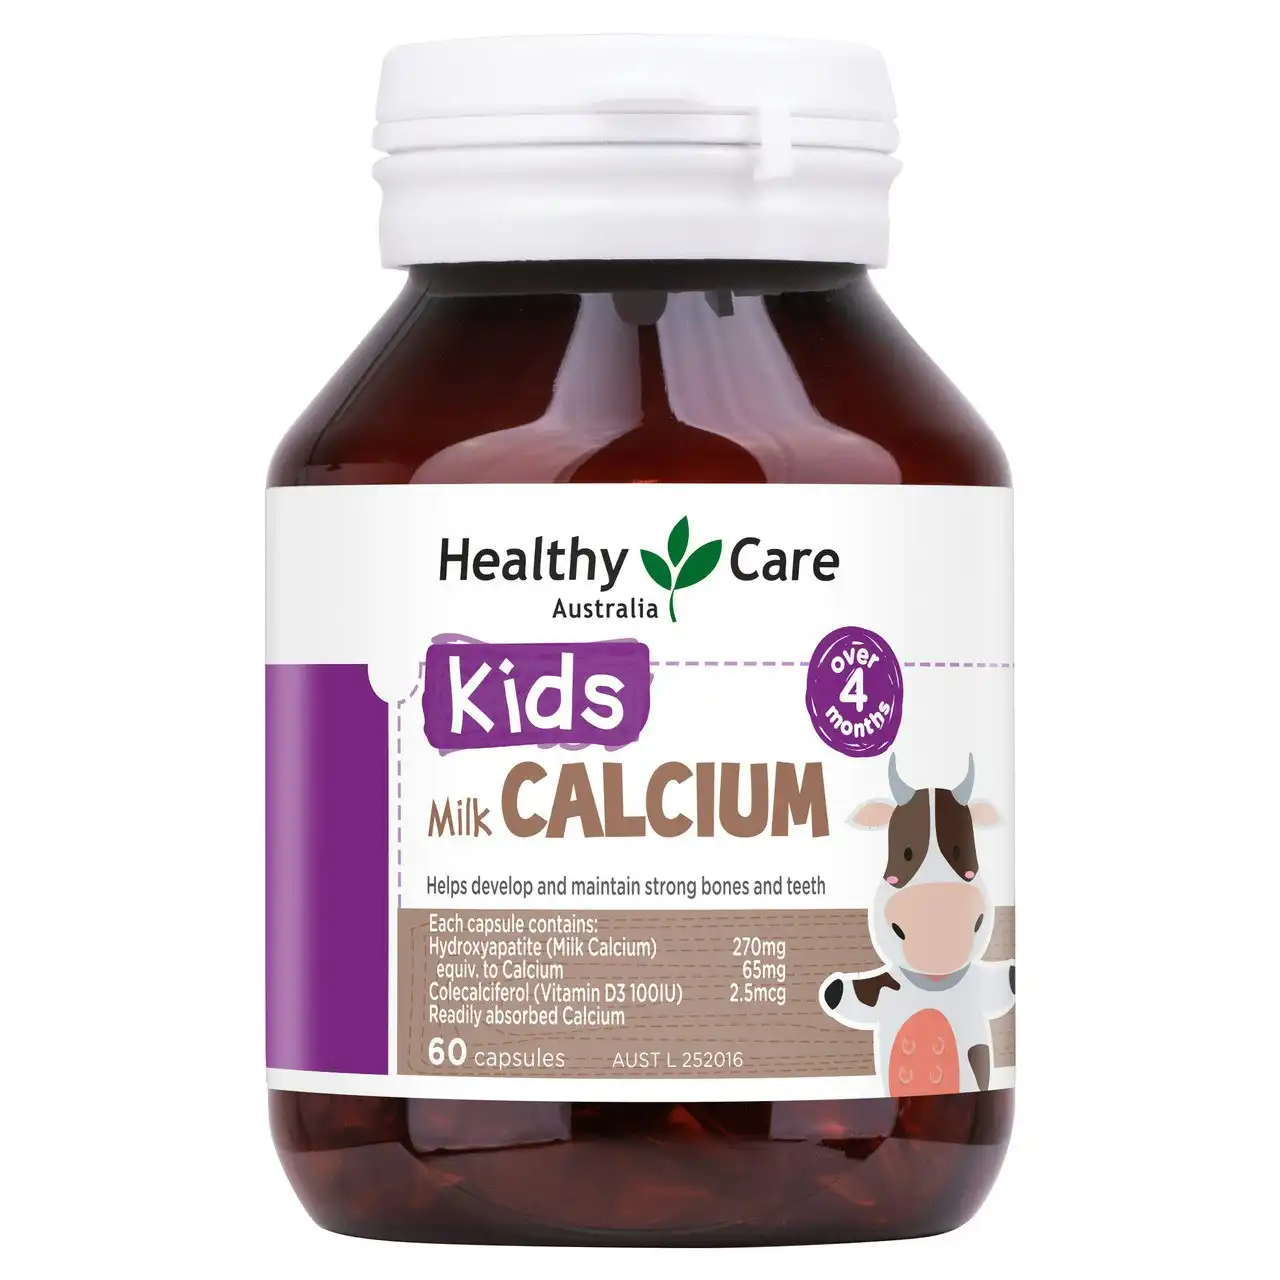 Healthy Care Kids Milk Calcium Over 4 Months 60 Capsules